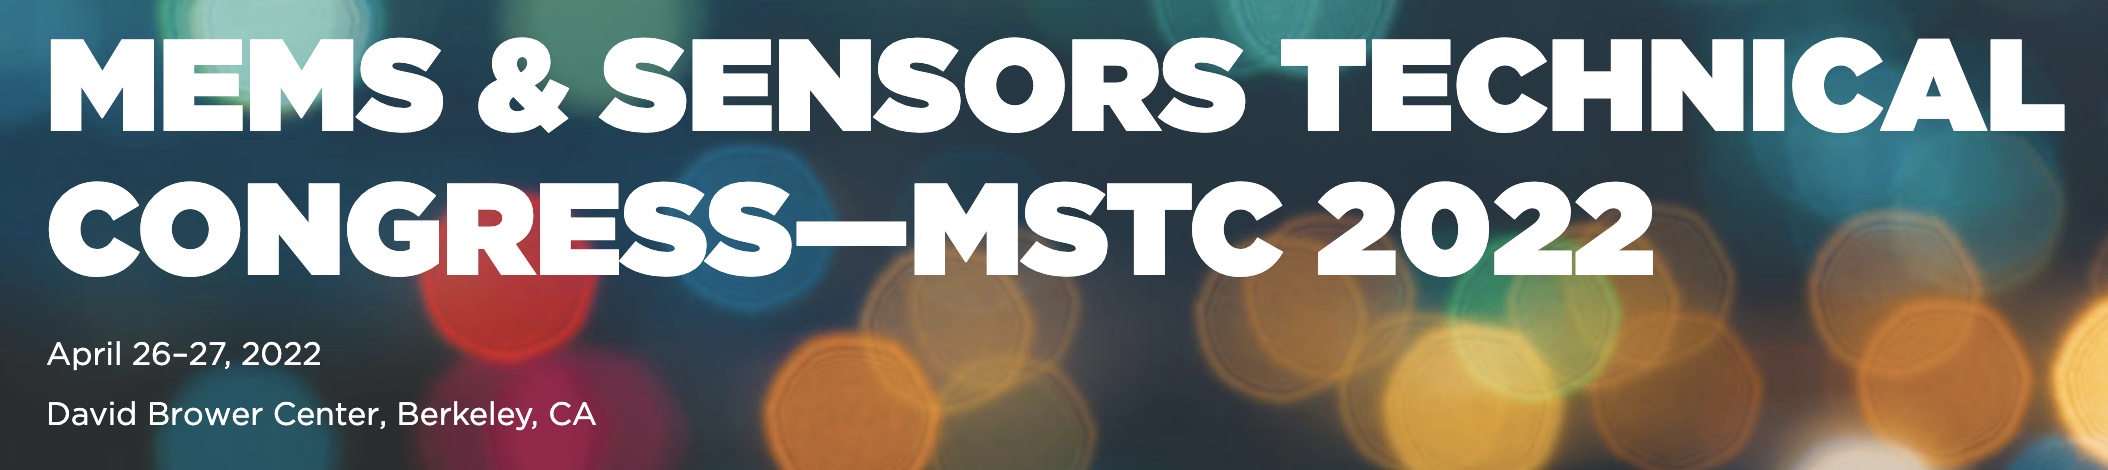 MEMS & Sensors Technical Congress